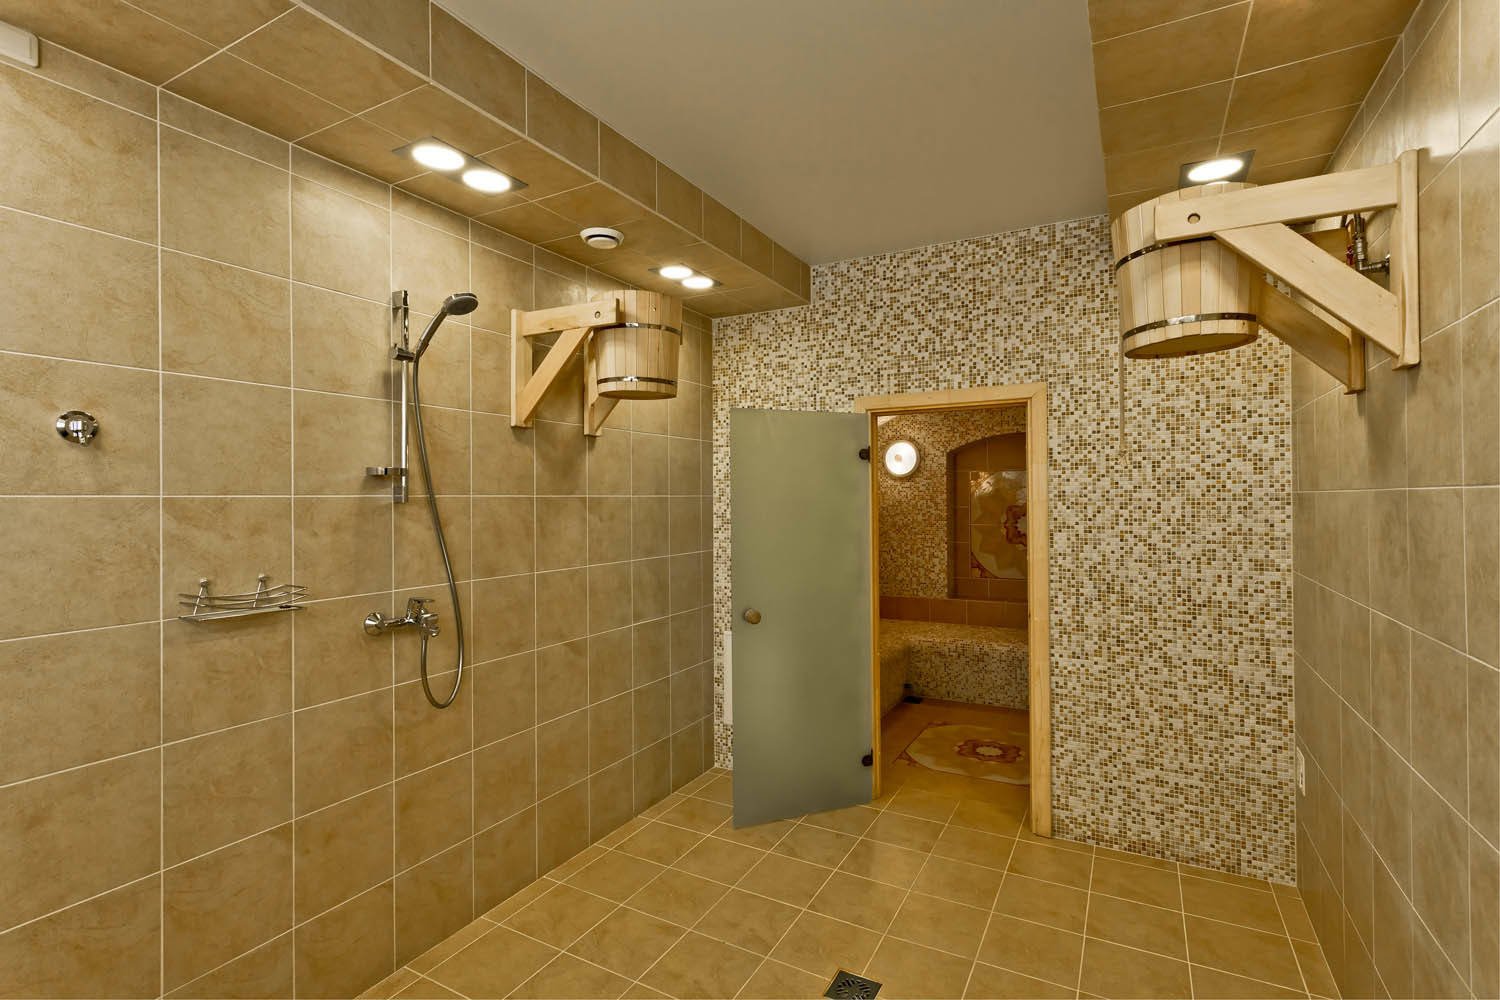 Моечная и помывочная в бане: отделка, дизайн и интерьер (+фото)